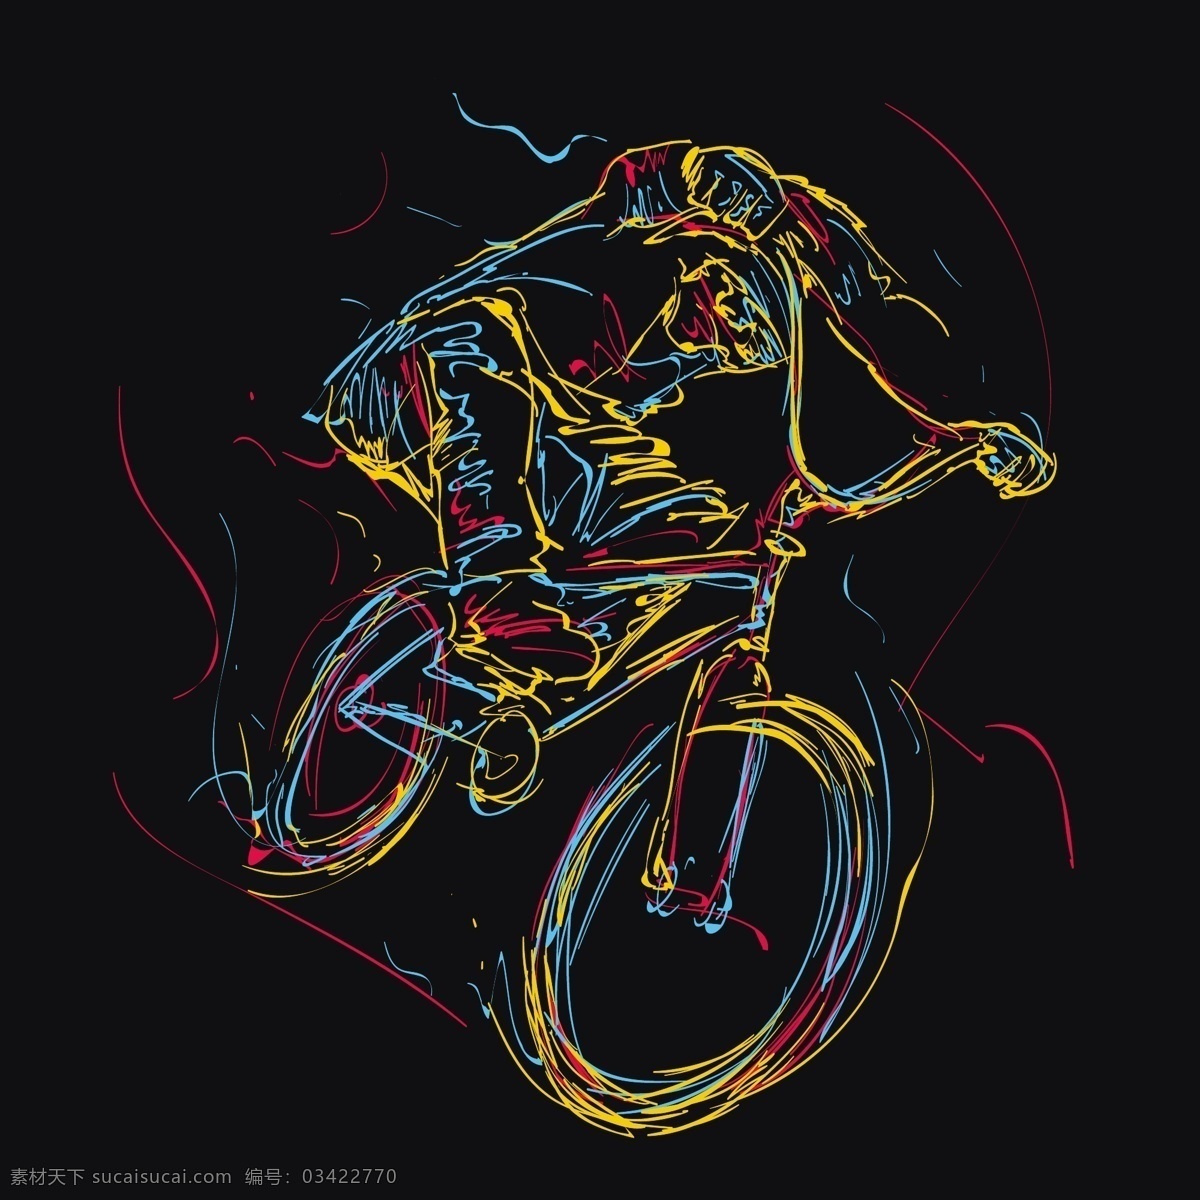 自行车 运动员 简 笔画 简笔画 线条画 线条 绘画 插画 艺术 卡通 动漫 动画 简图 涂色画 涂鸦 背景 海报 宣传册 宣传画 插图 体育 体育运动 骑行者 小轮车